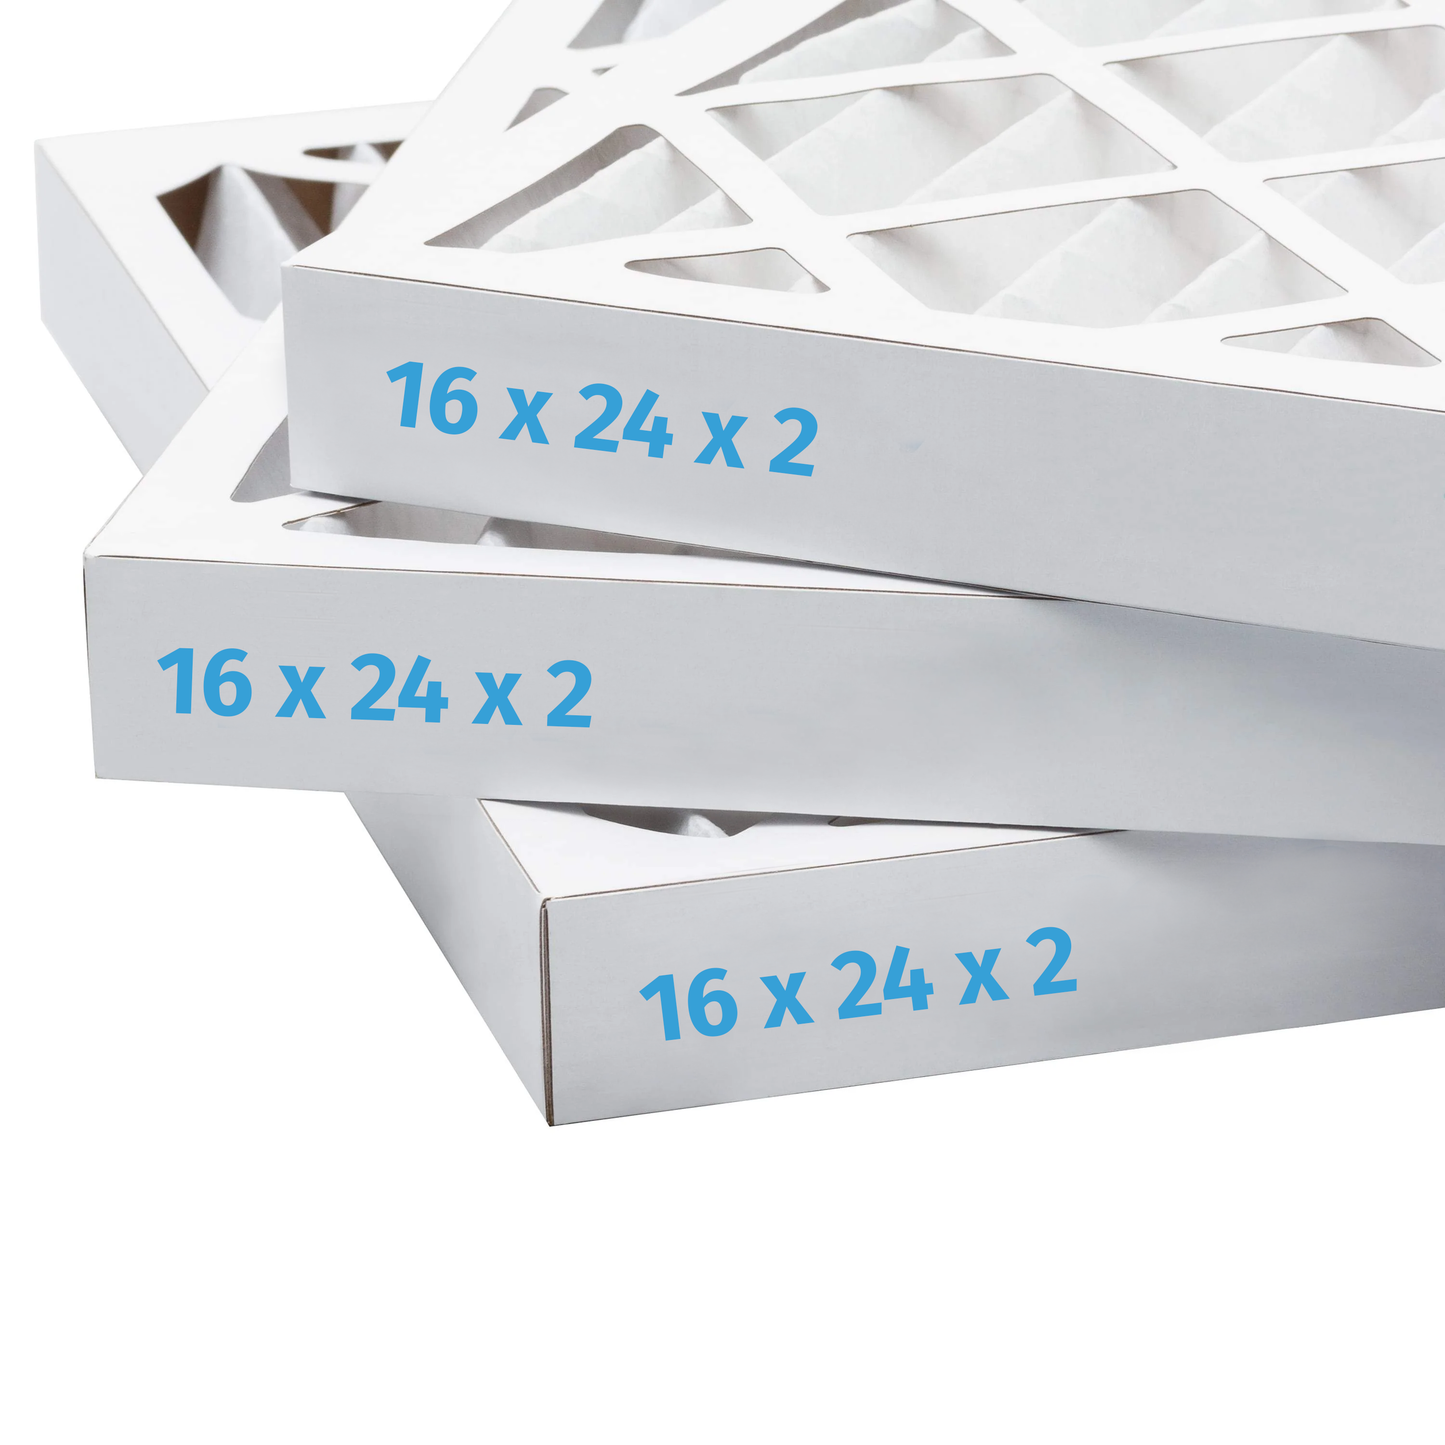 16x24x2 Air Filter - AC Furnace Filter